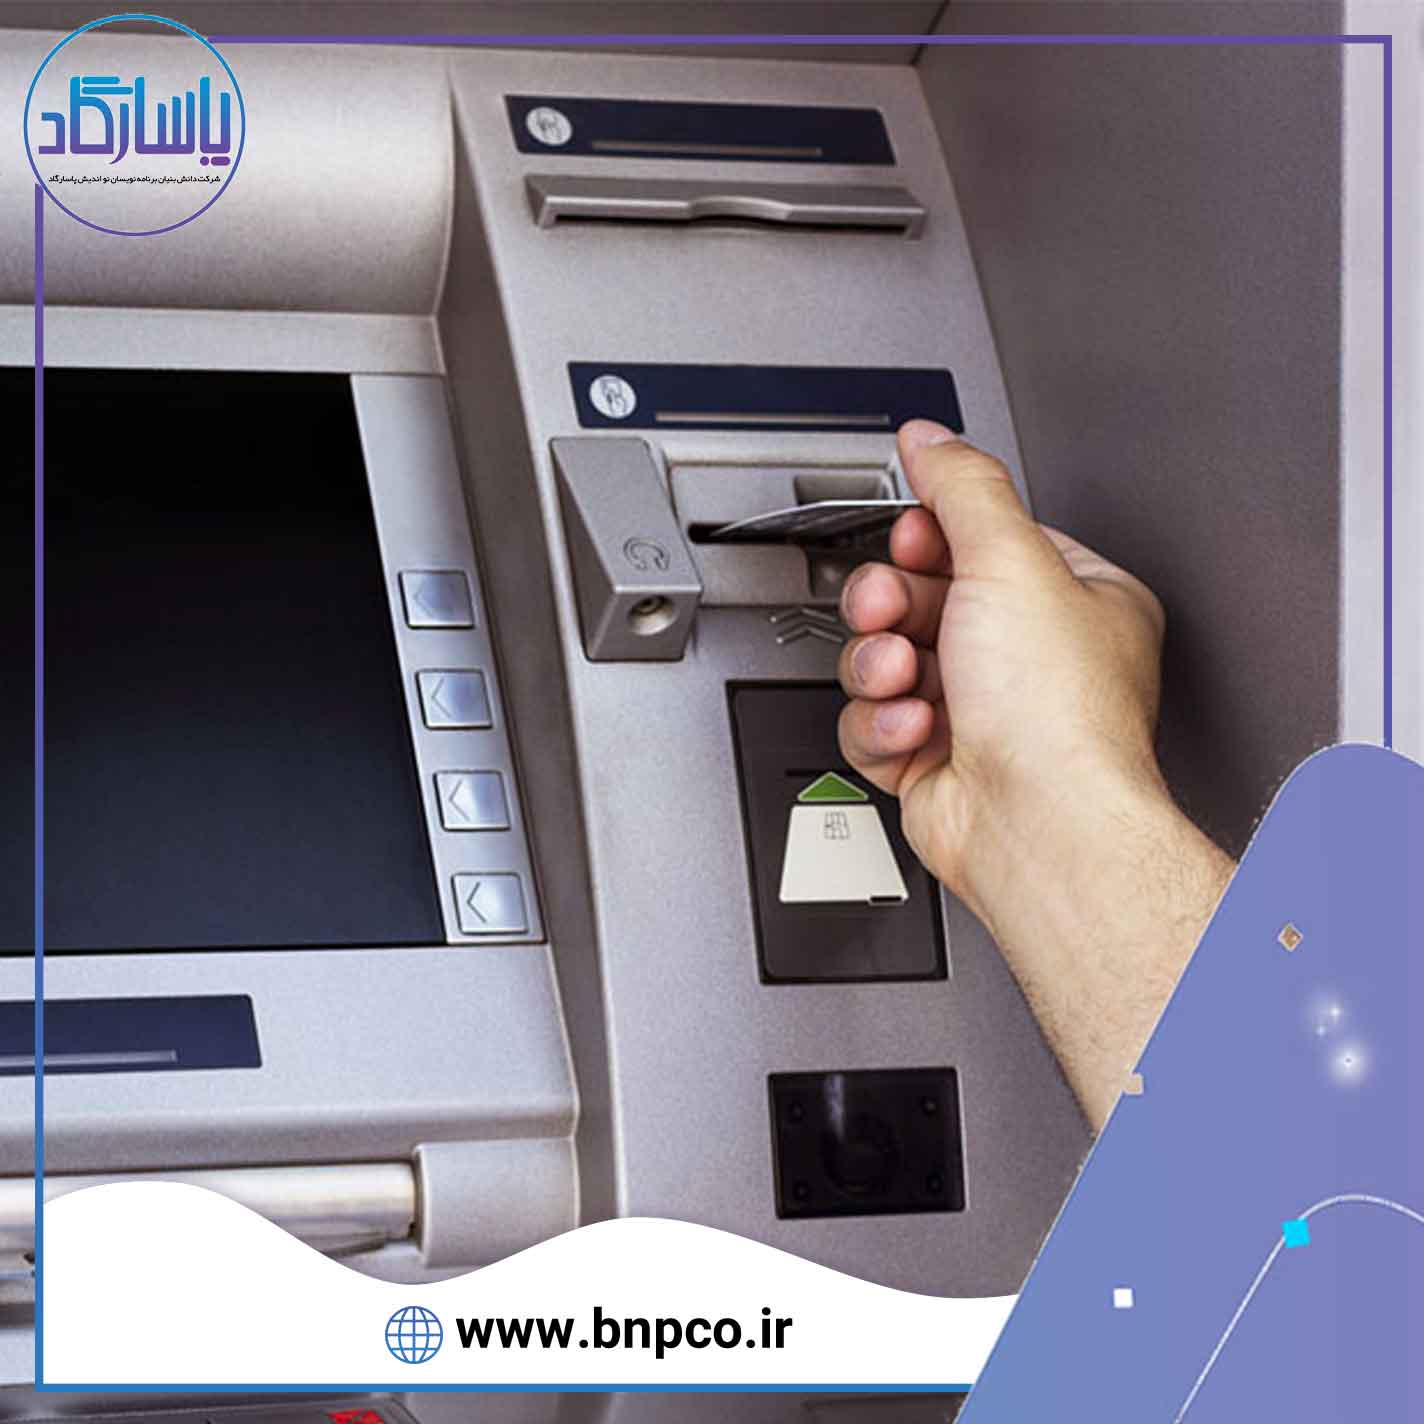 دستگاه خودپرداز(ATM) - خدمات شبکه شتاب